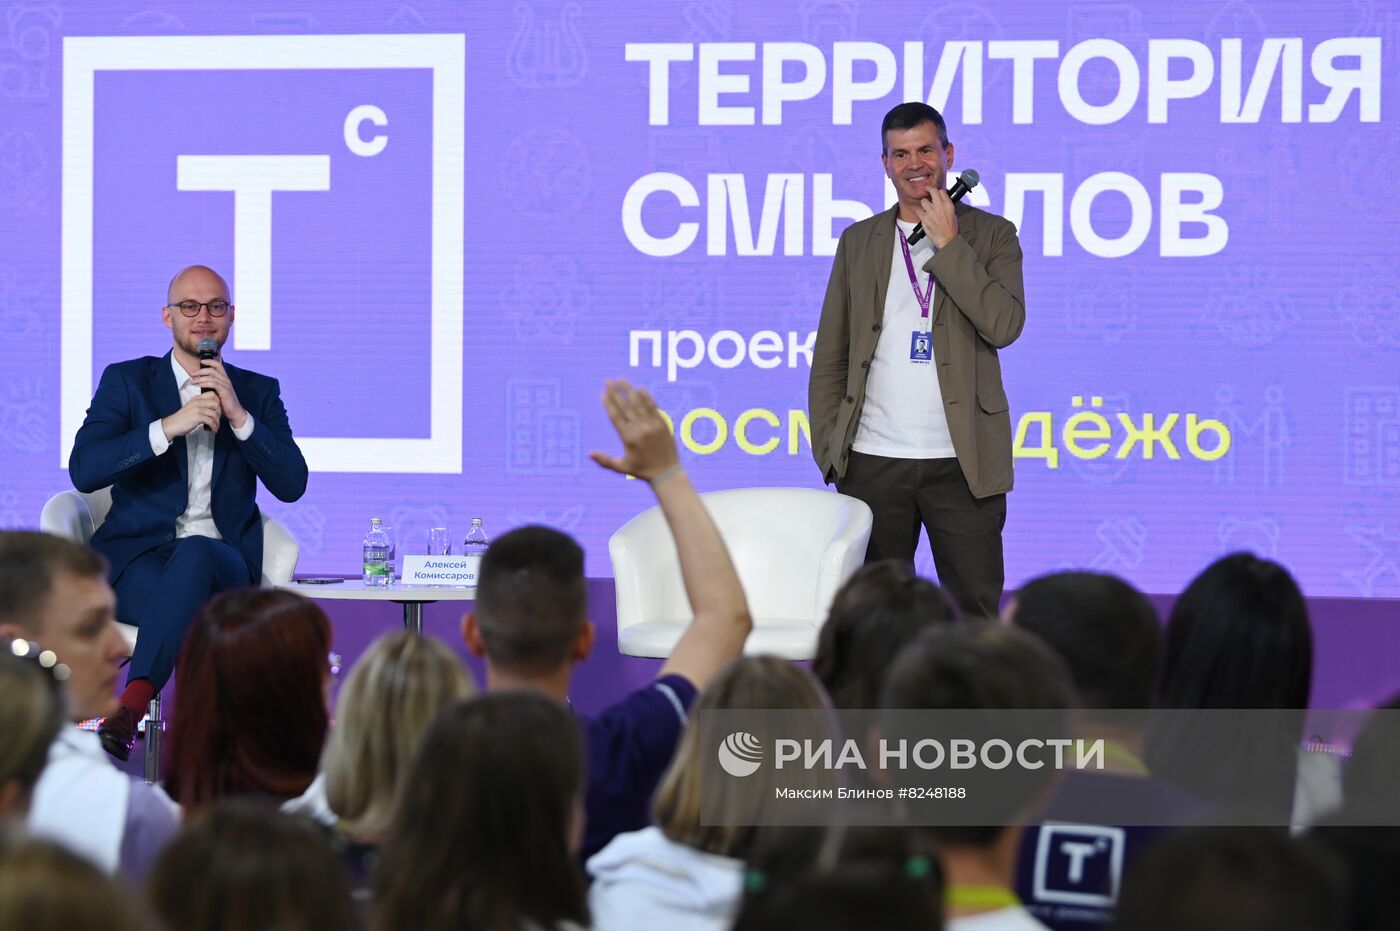 Всероссийский молодёжный форум "Территория смыслов" 